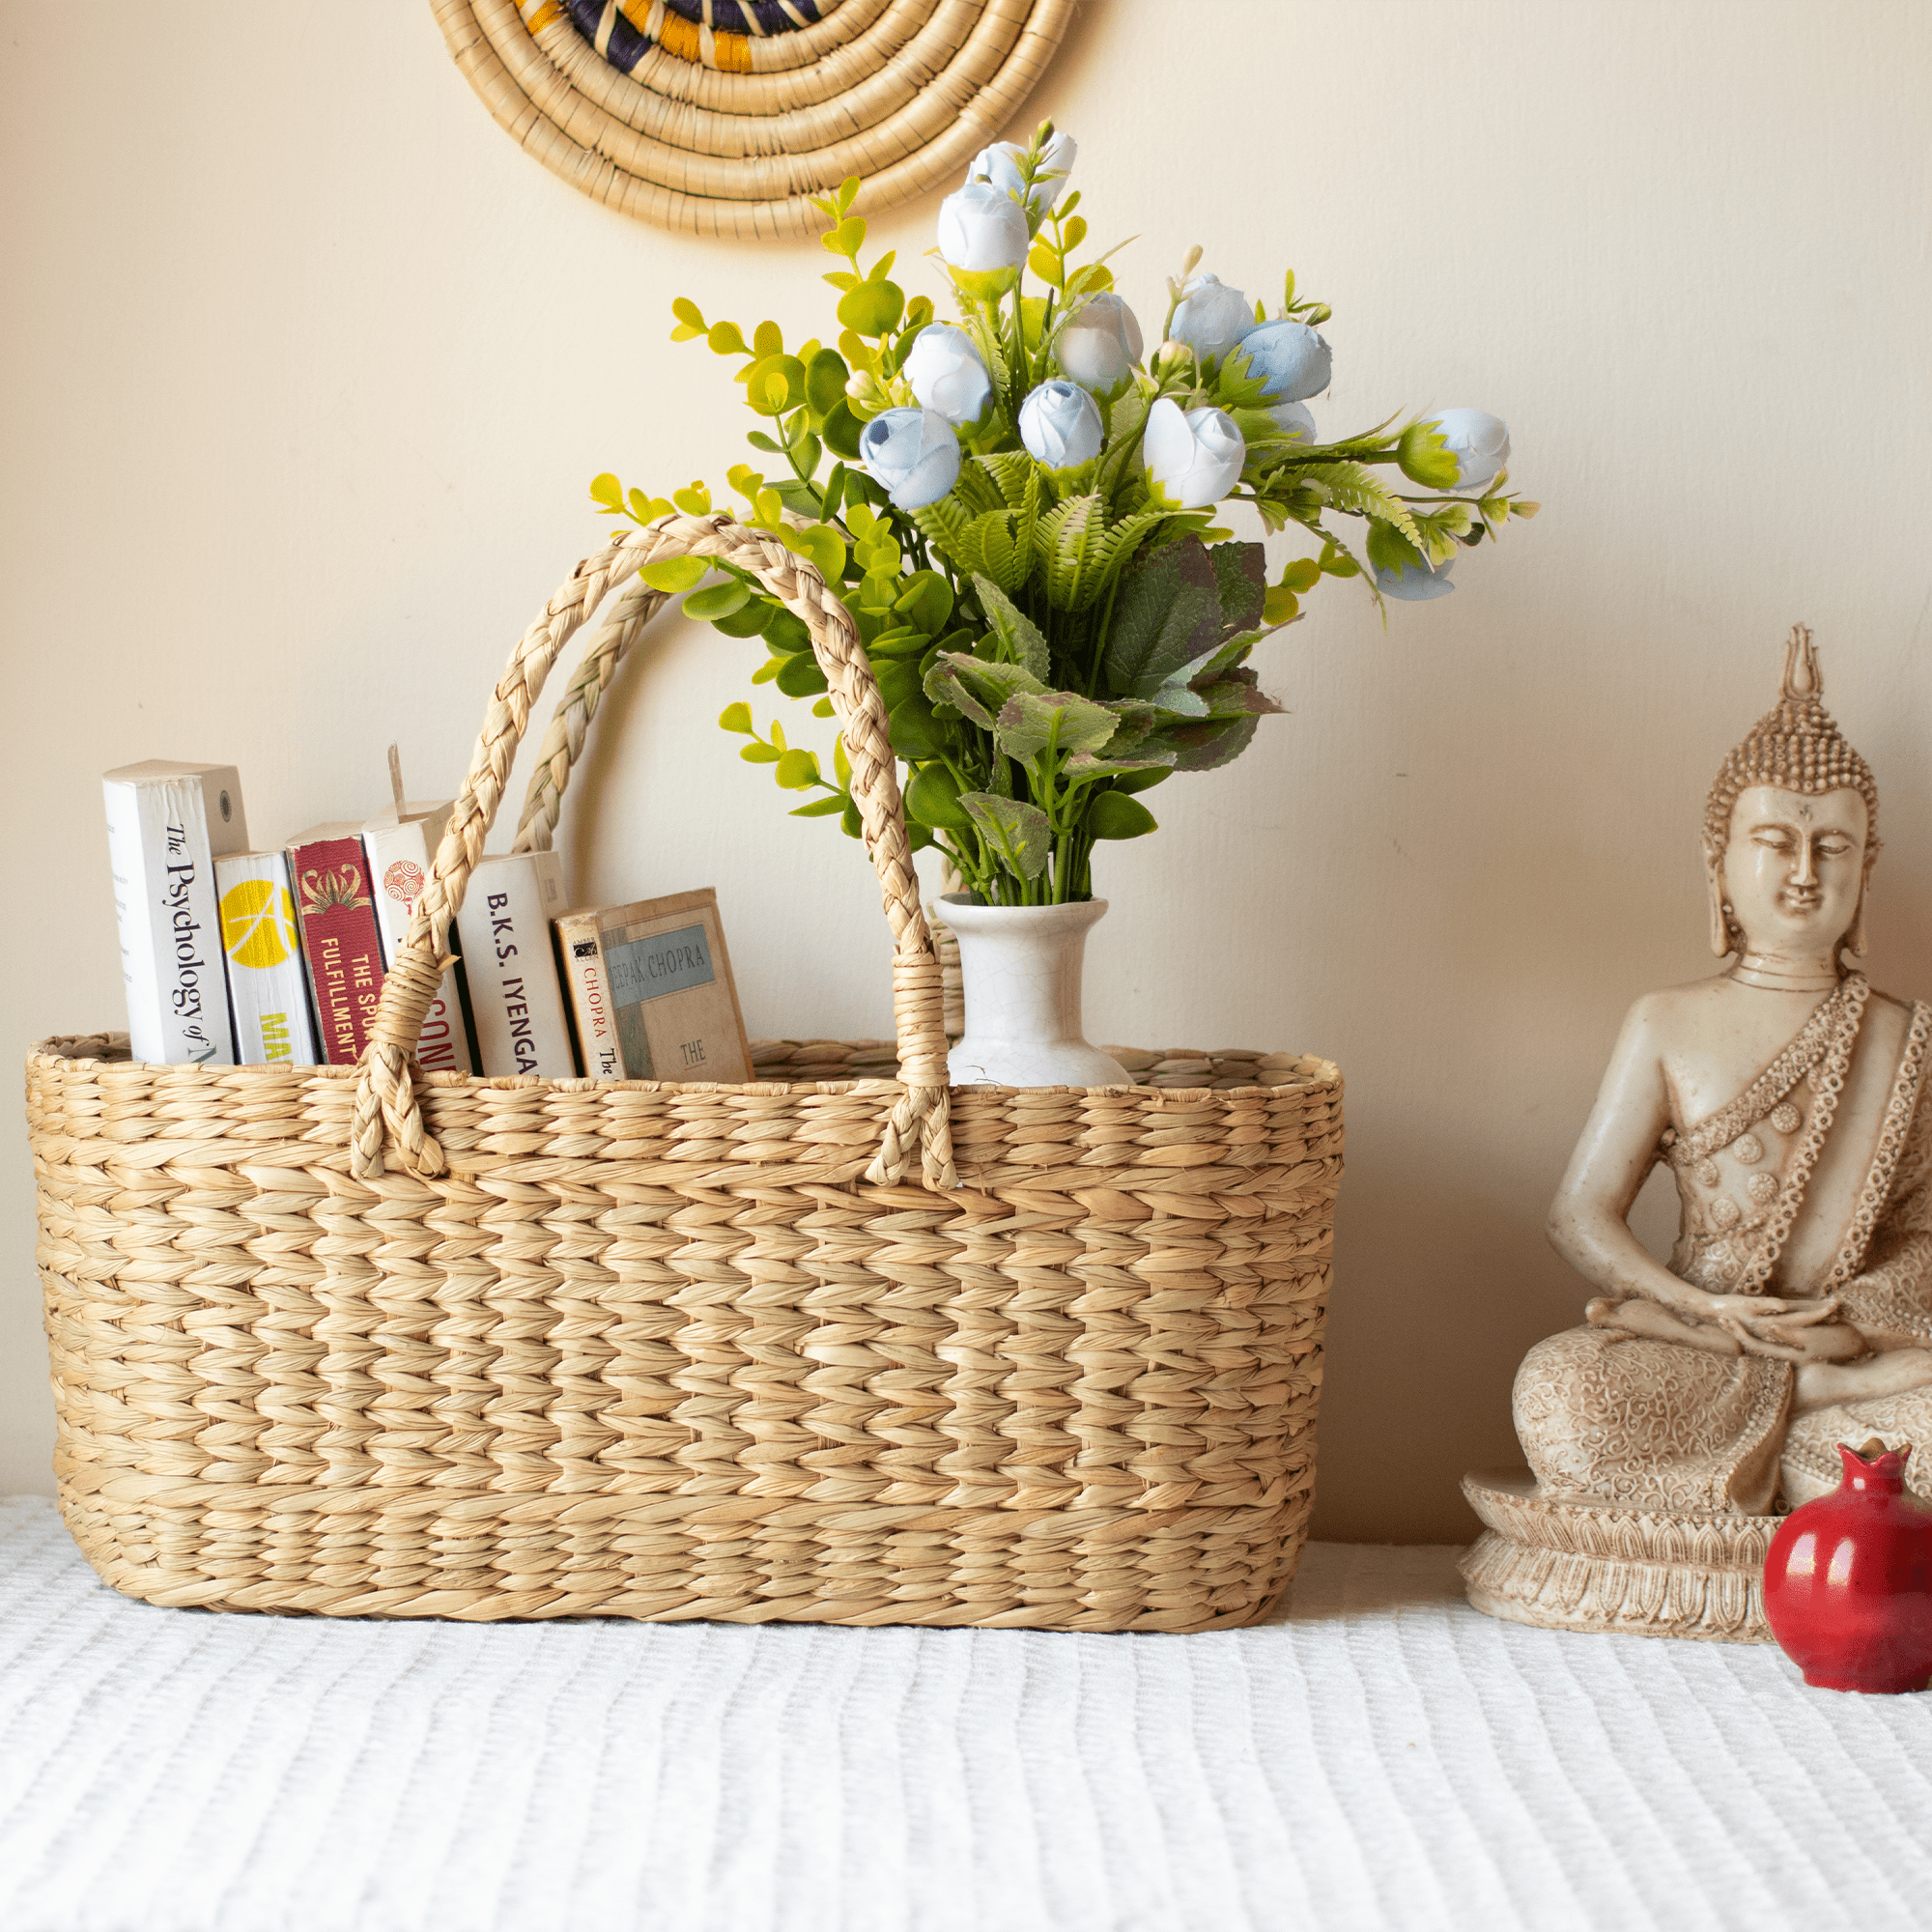 Deluxe Favorites Gift Basket | Food Gift Baskets | Harry & David